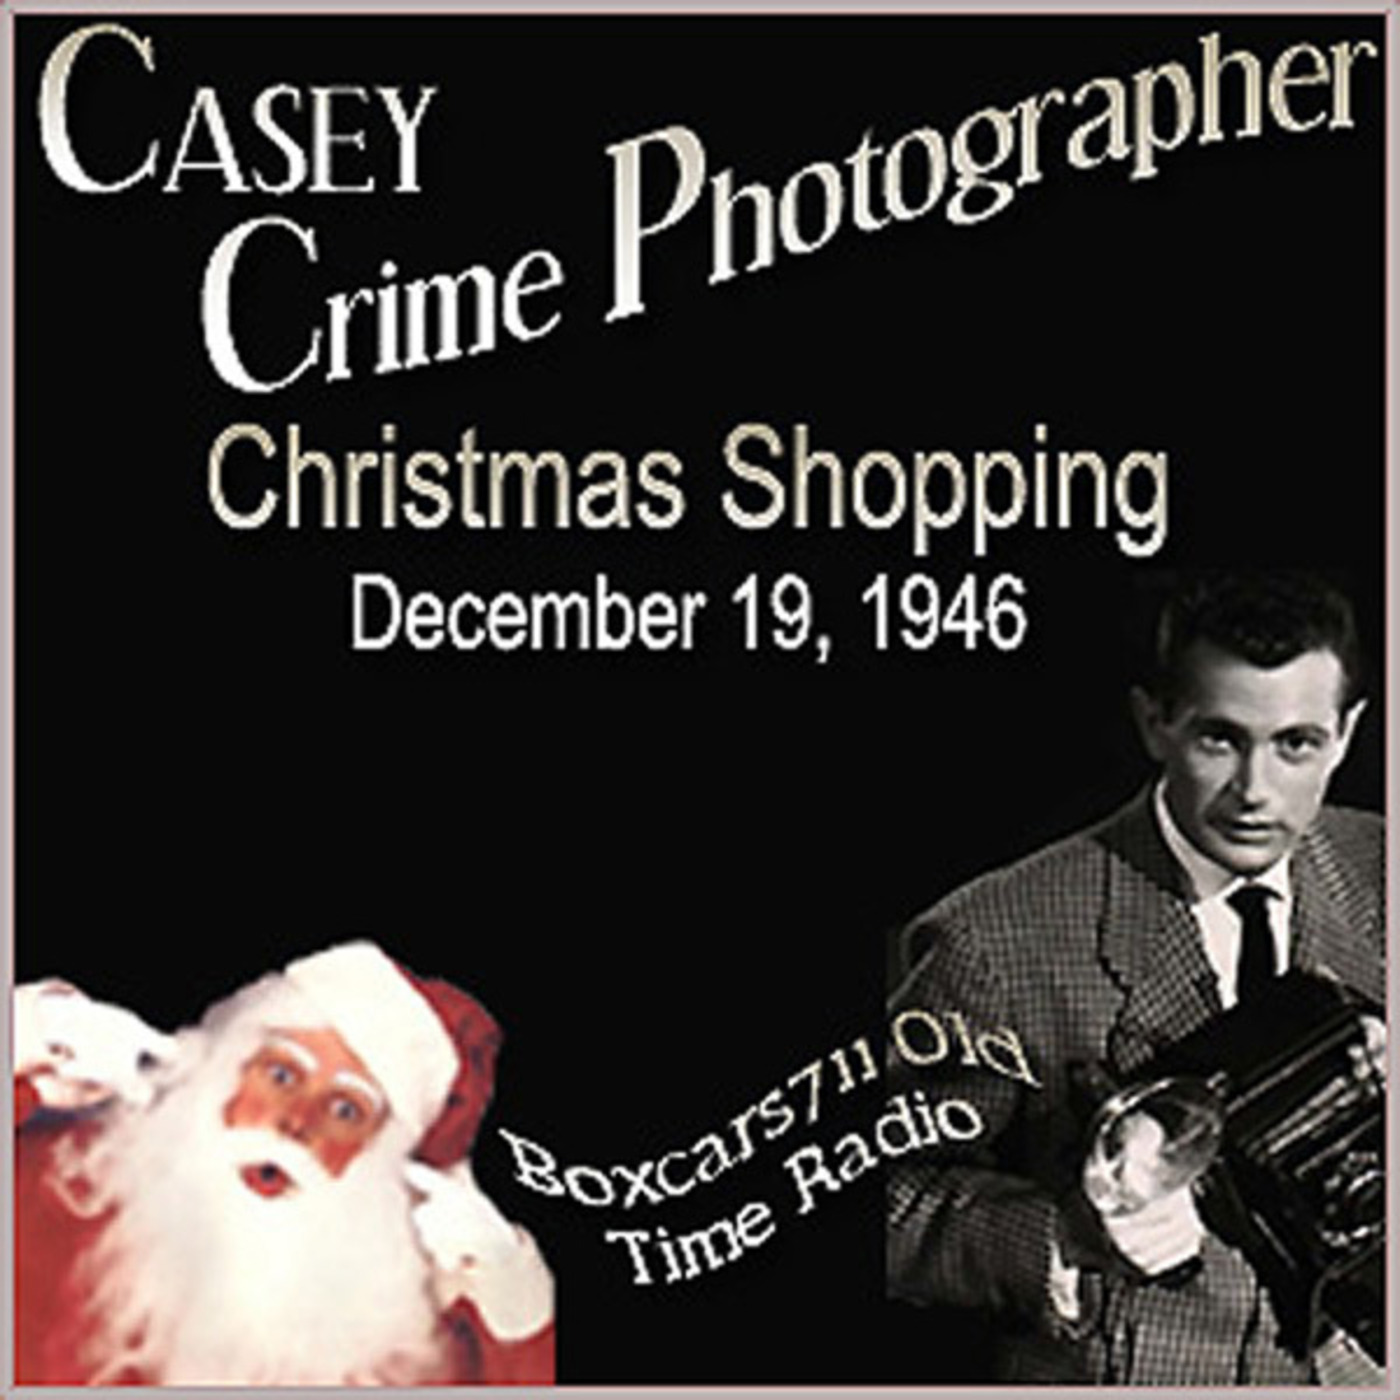 Episode 9549: Casey Crime Photographer - 